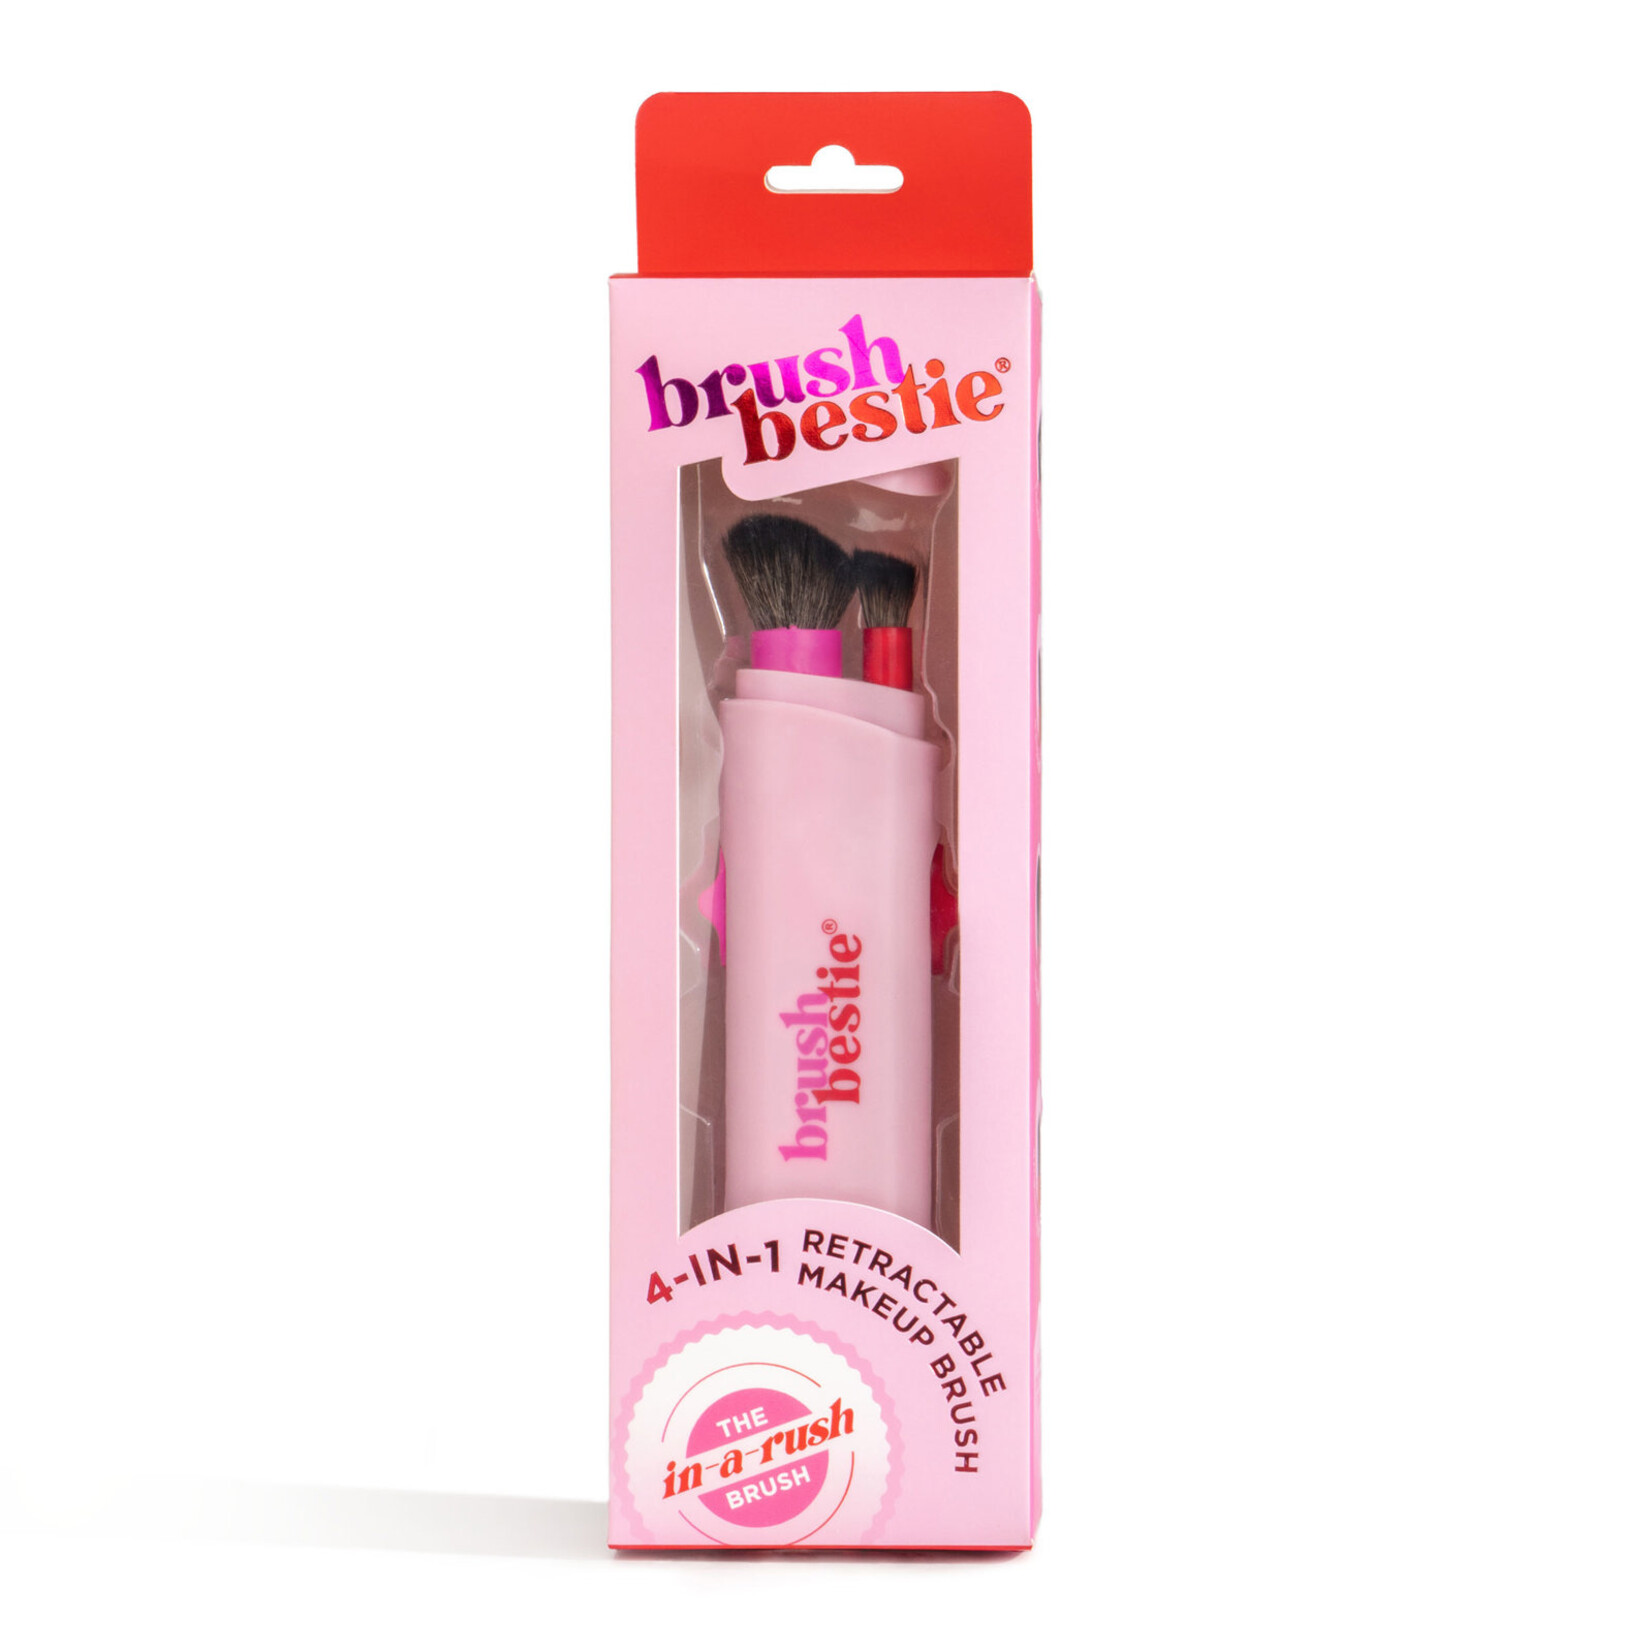 DM Merchandising Brush Bestie - 4 in 1 Make up Brush